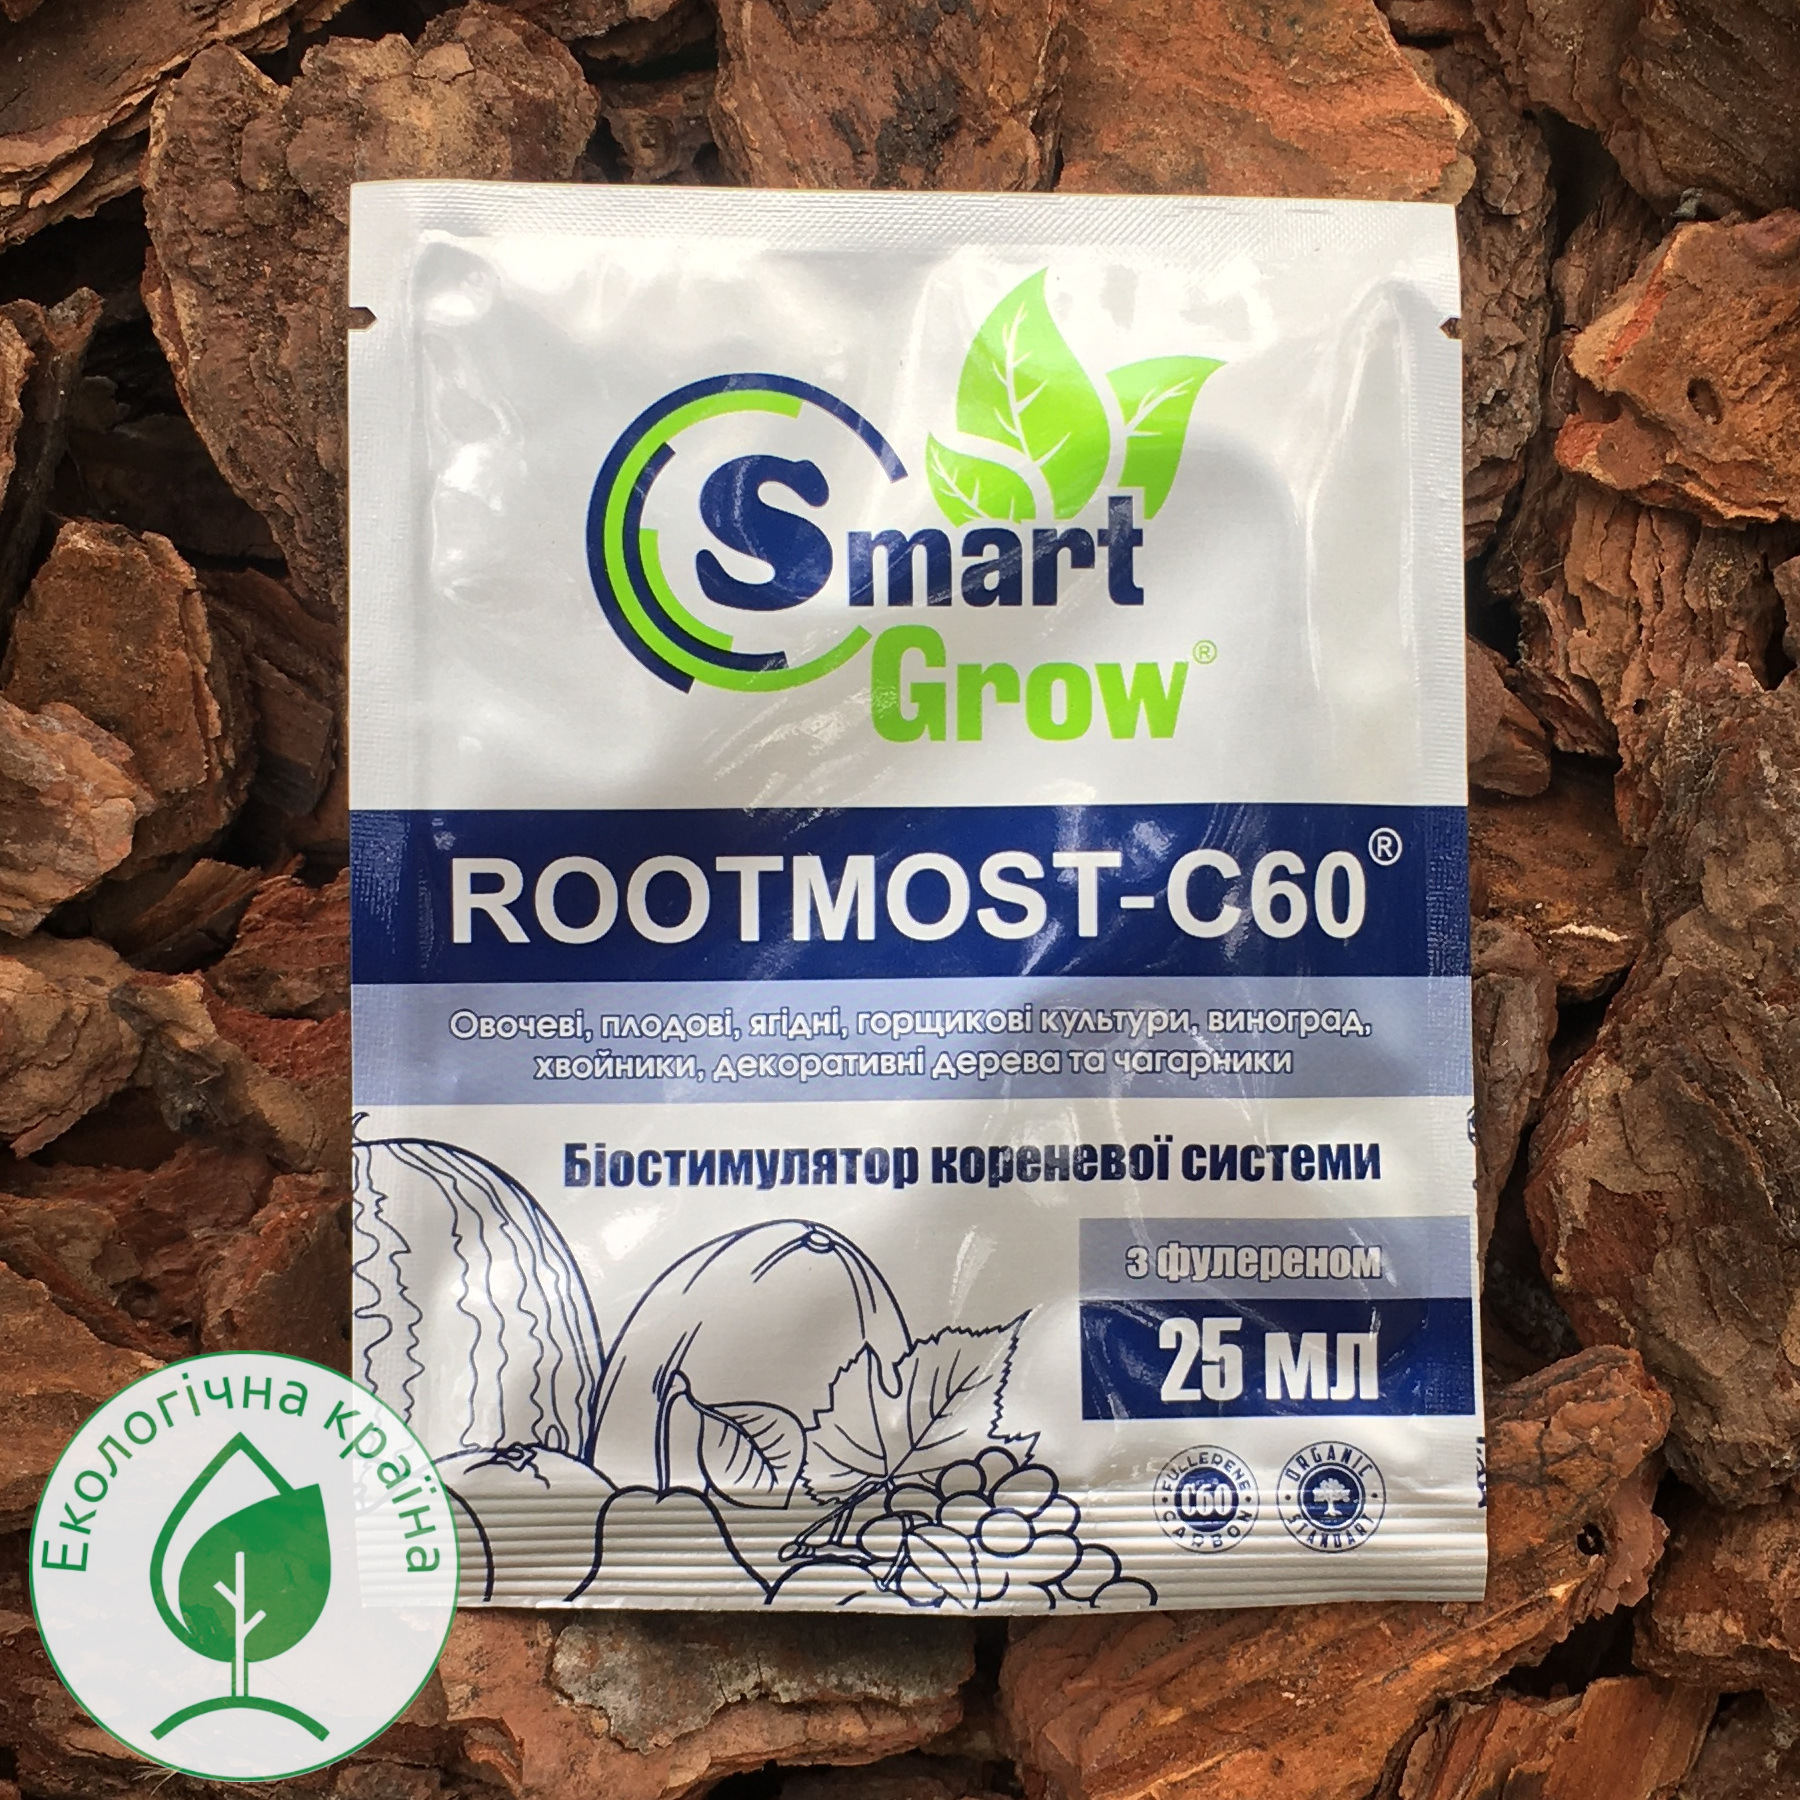 Smart Grow “Rootmost c-60”